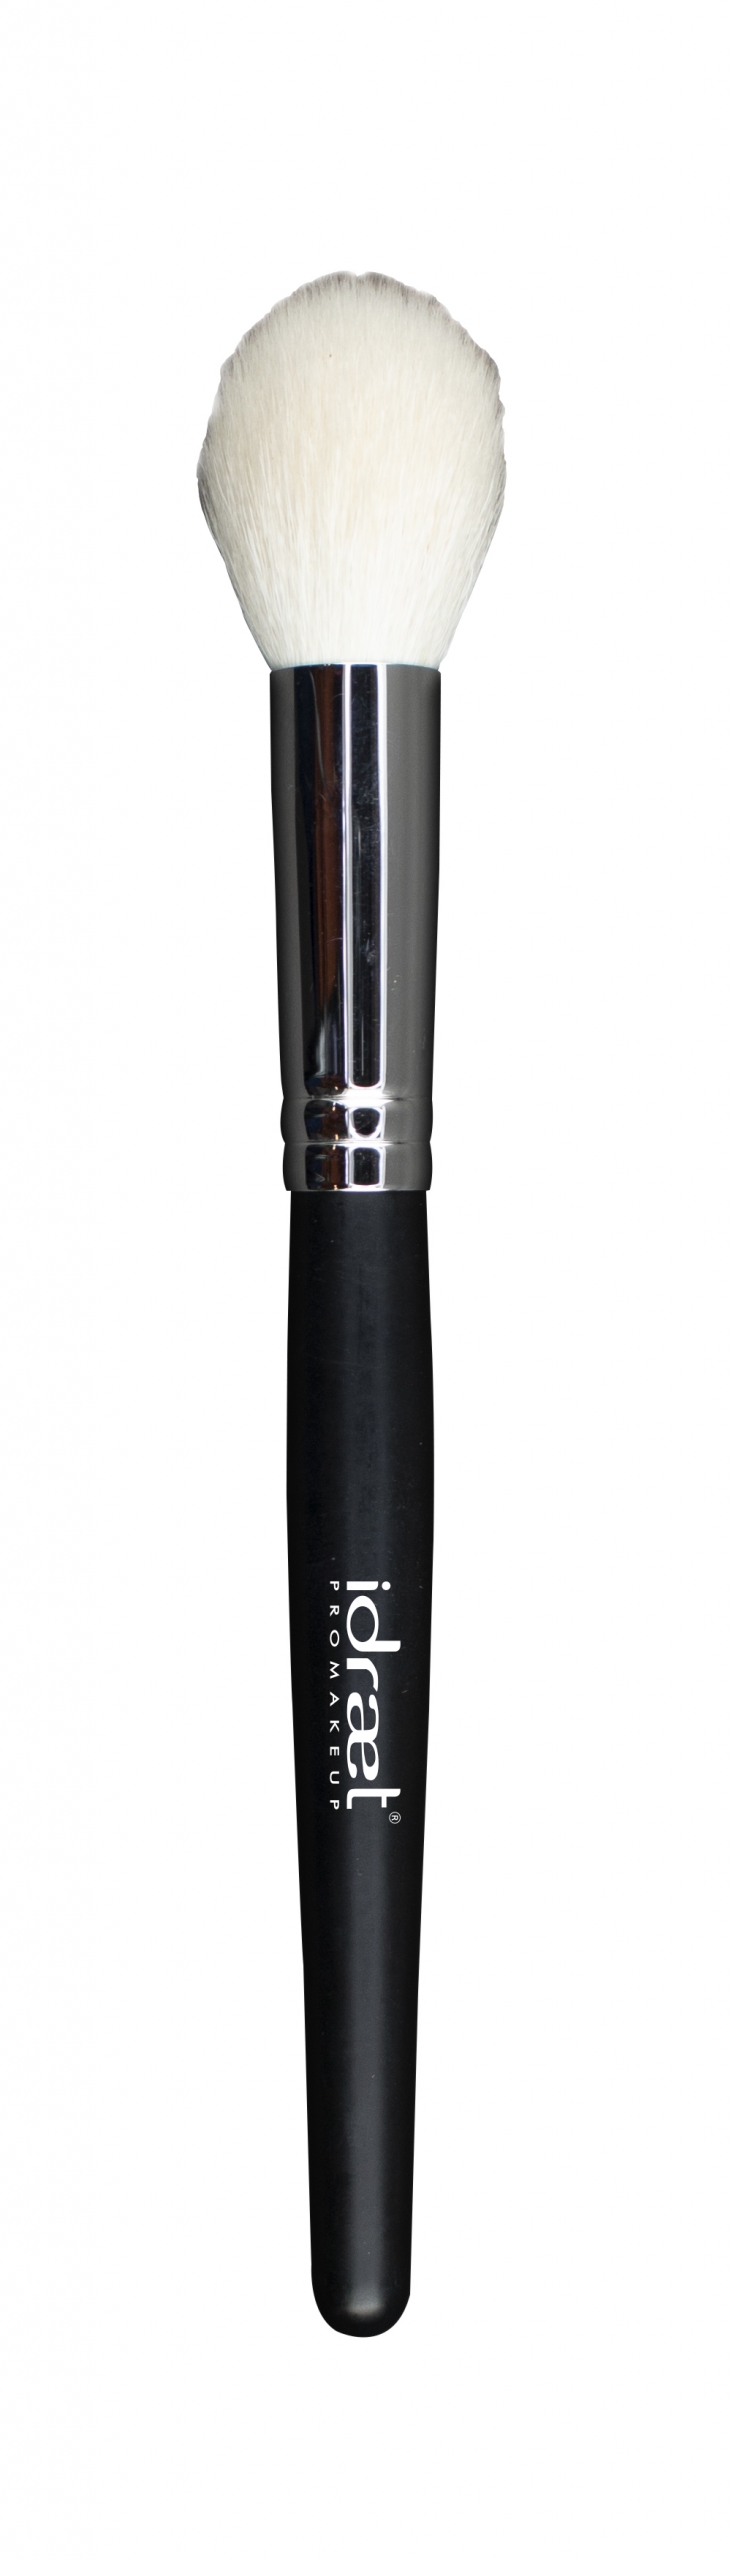 IDRAET - Brocha para Rubor - SP35 Blush Brush